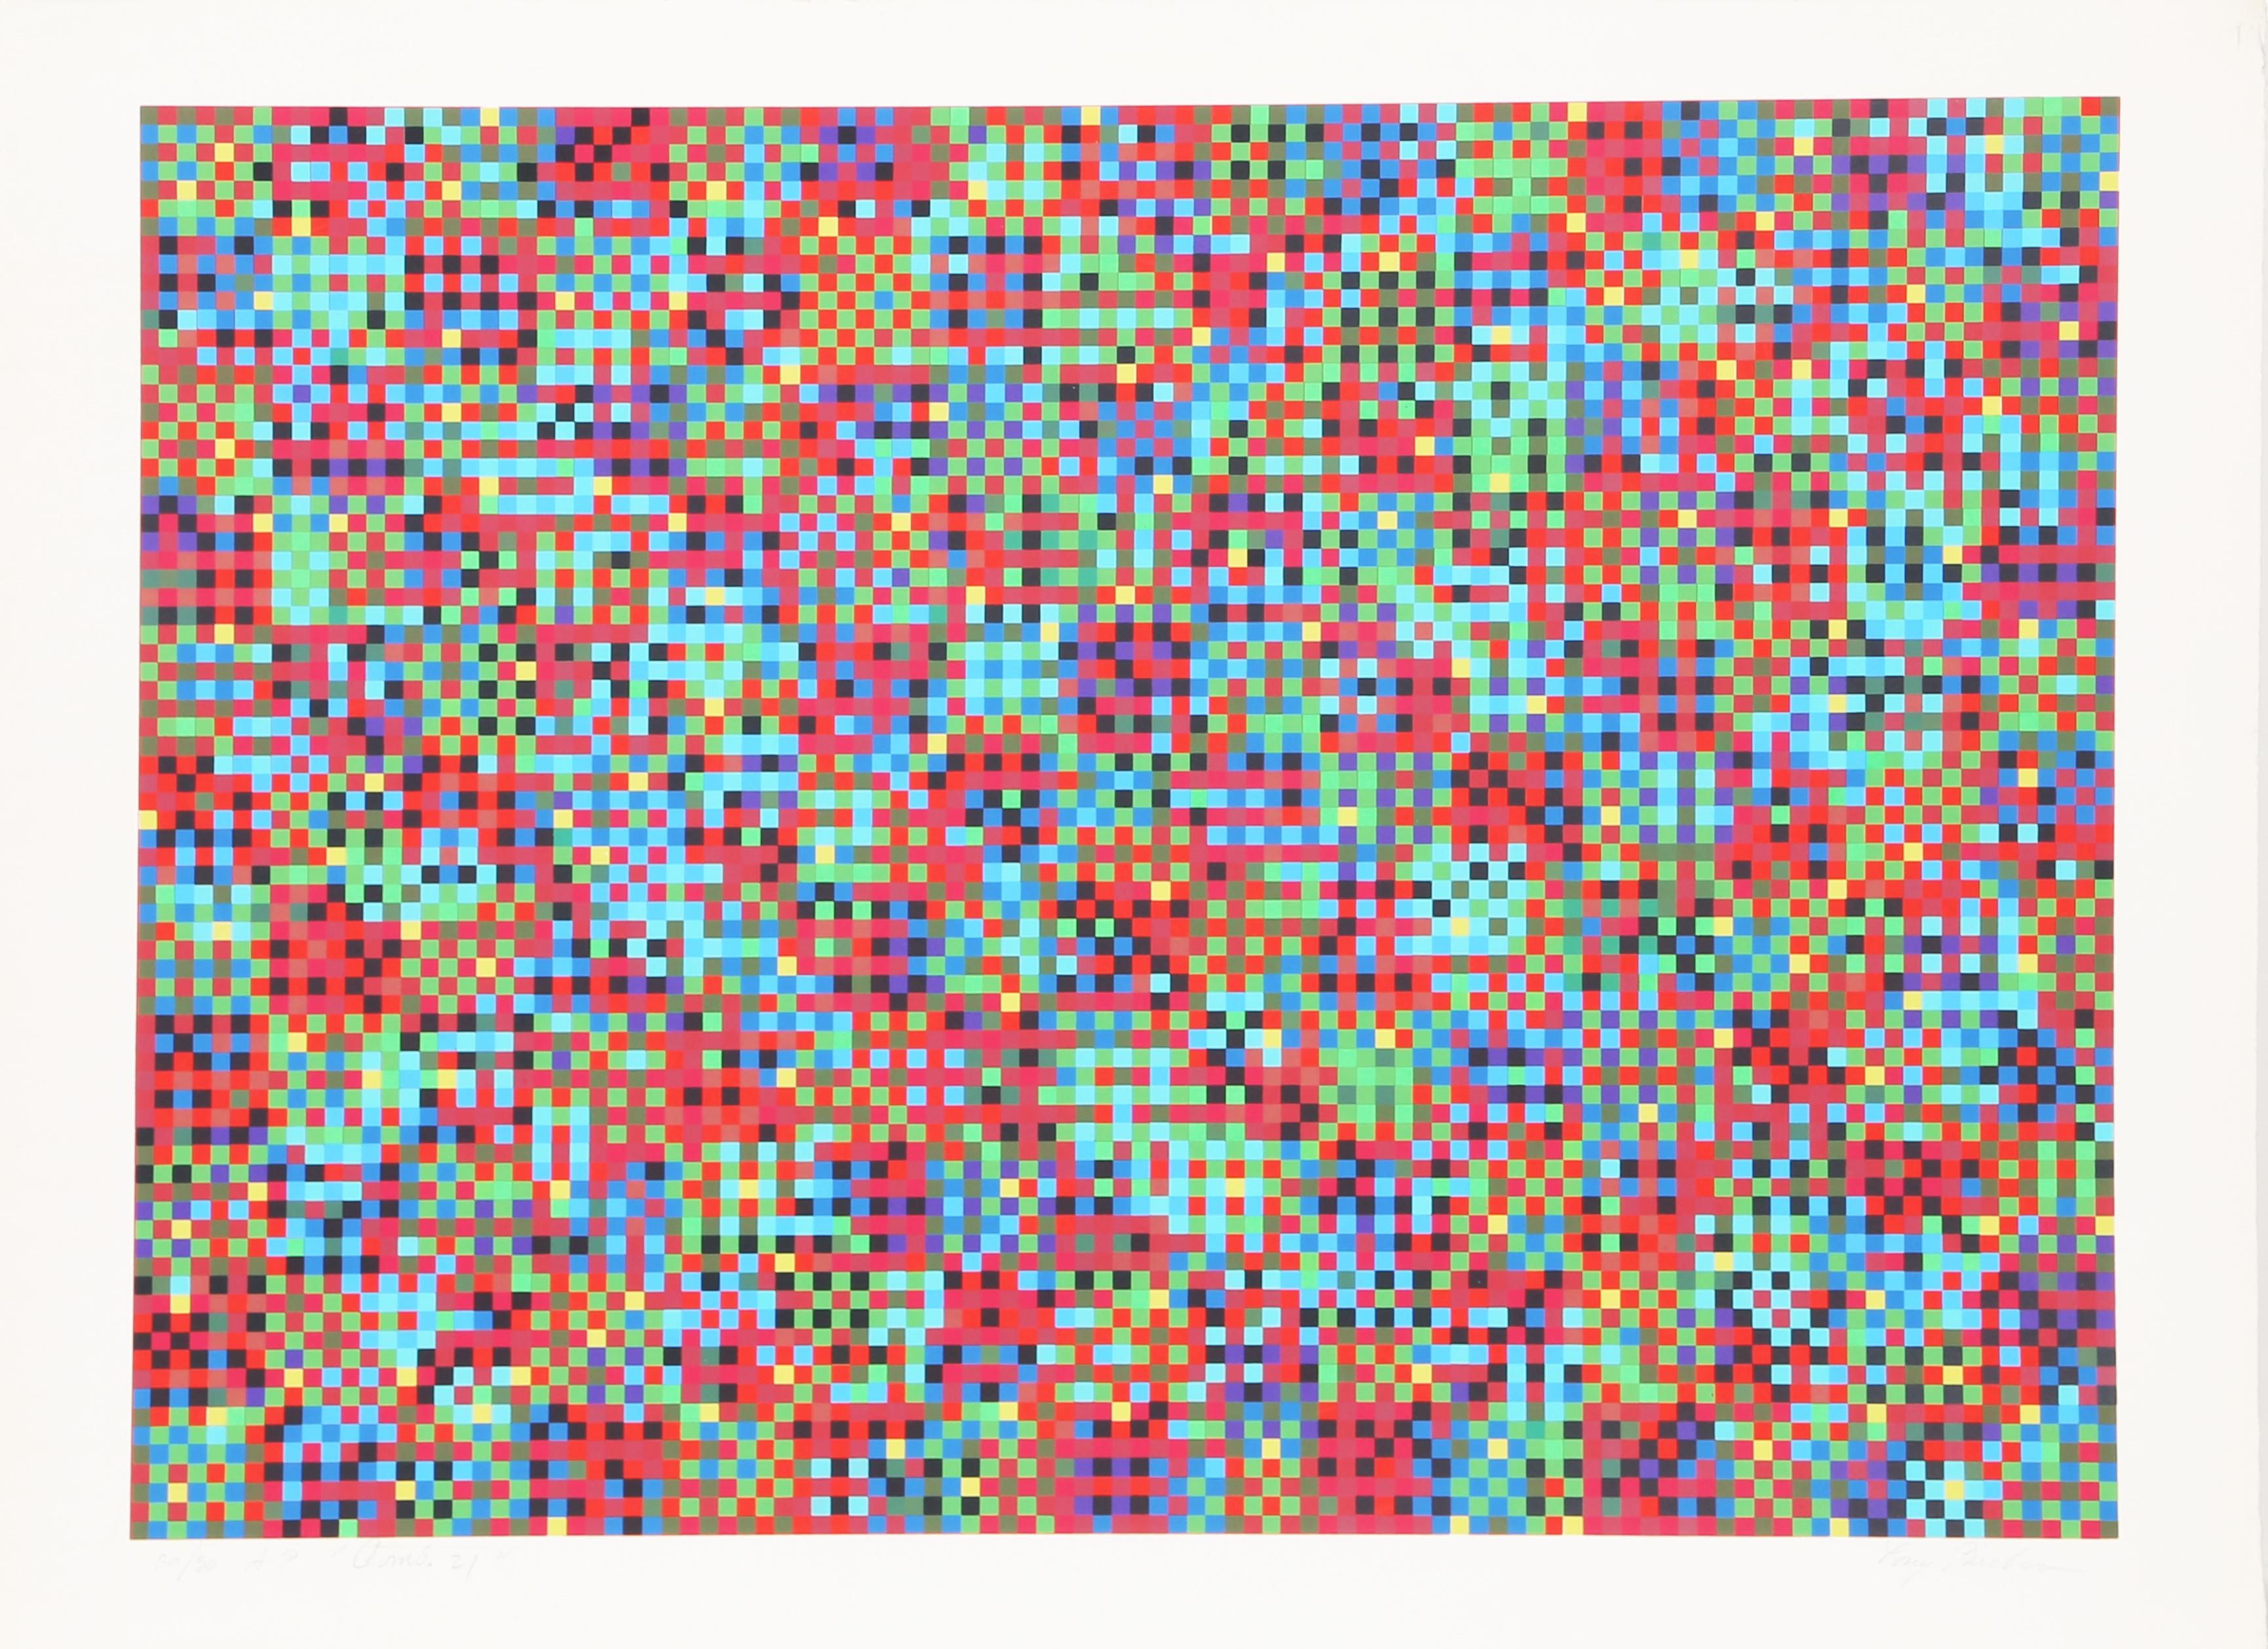 Tony Becharas abstrakte Komposition in Rot, Blau und Grün beschäftigt sich mit der Frage der Sichtbarkeit und Darstellung in der Kunst. Diese abstrakte und verschwommene Darstellung ist sinnbildlich für seine Werke, die oft auf zufällige Muster und